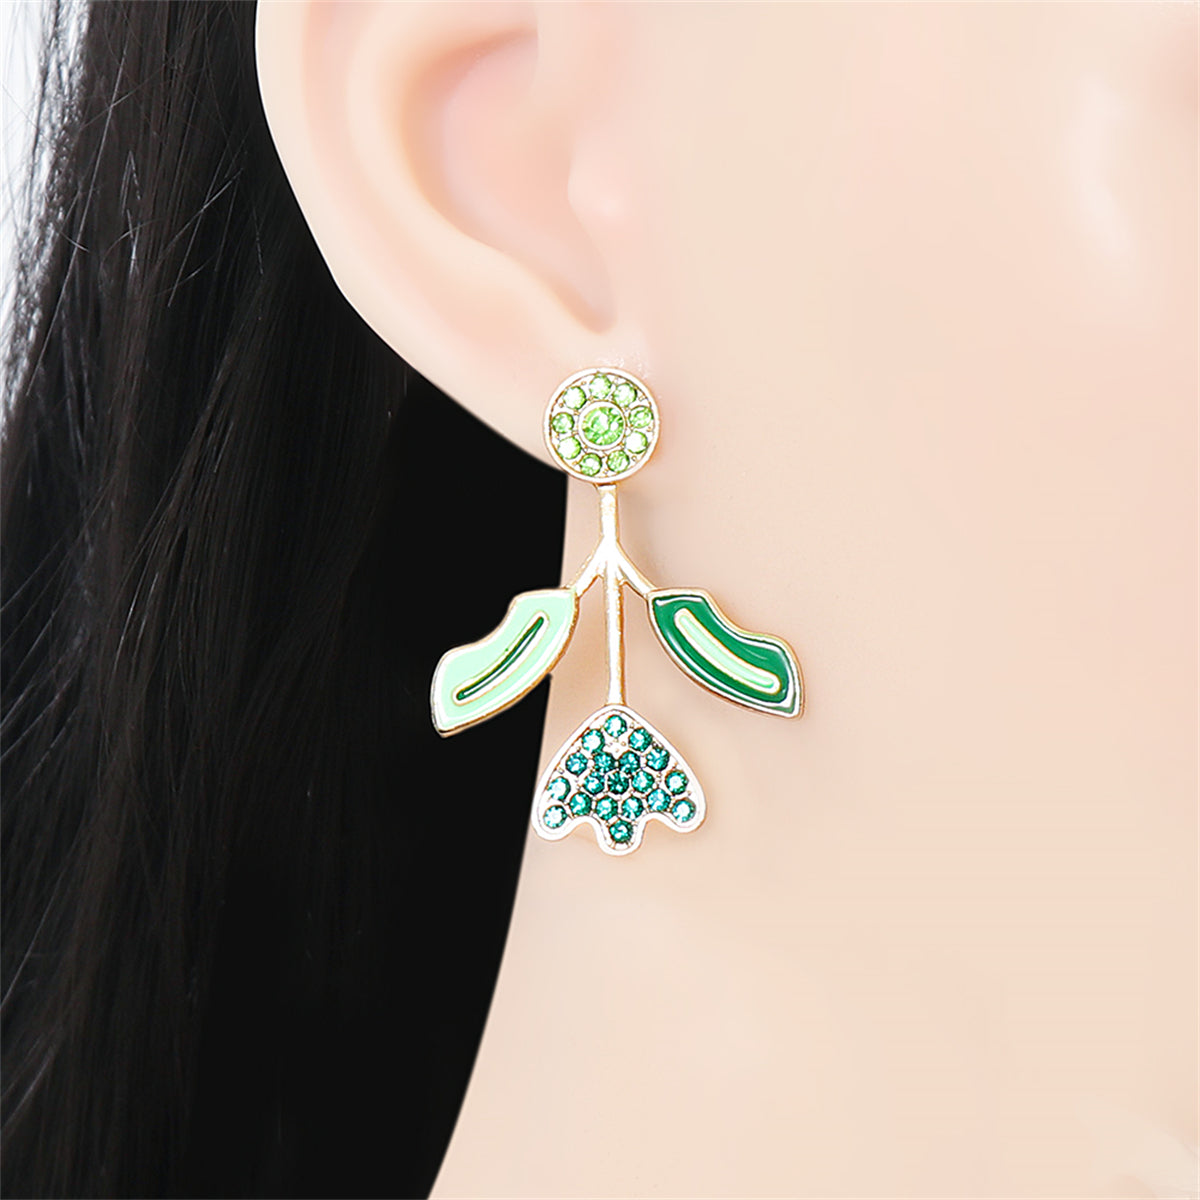 Green Cubic Zirconia & Enamel Leaf Drop Earrings